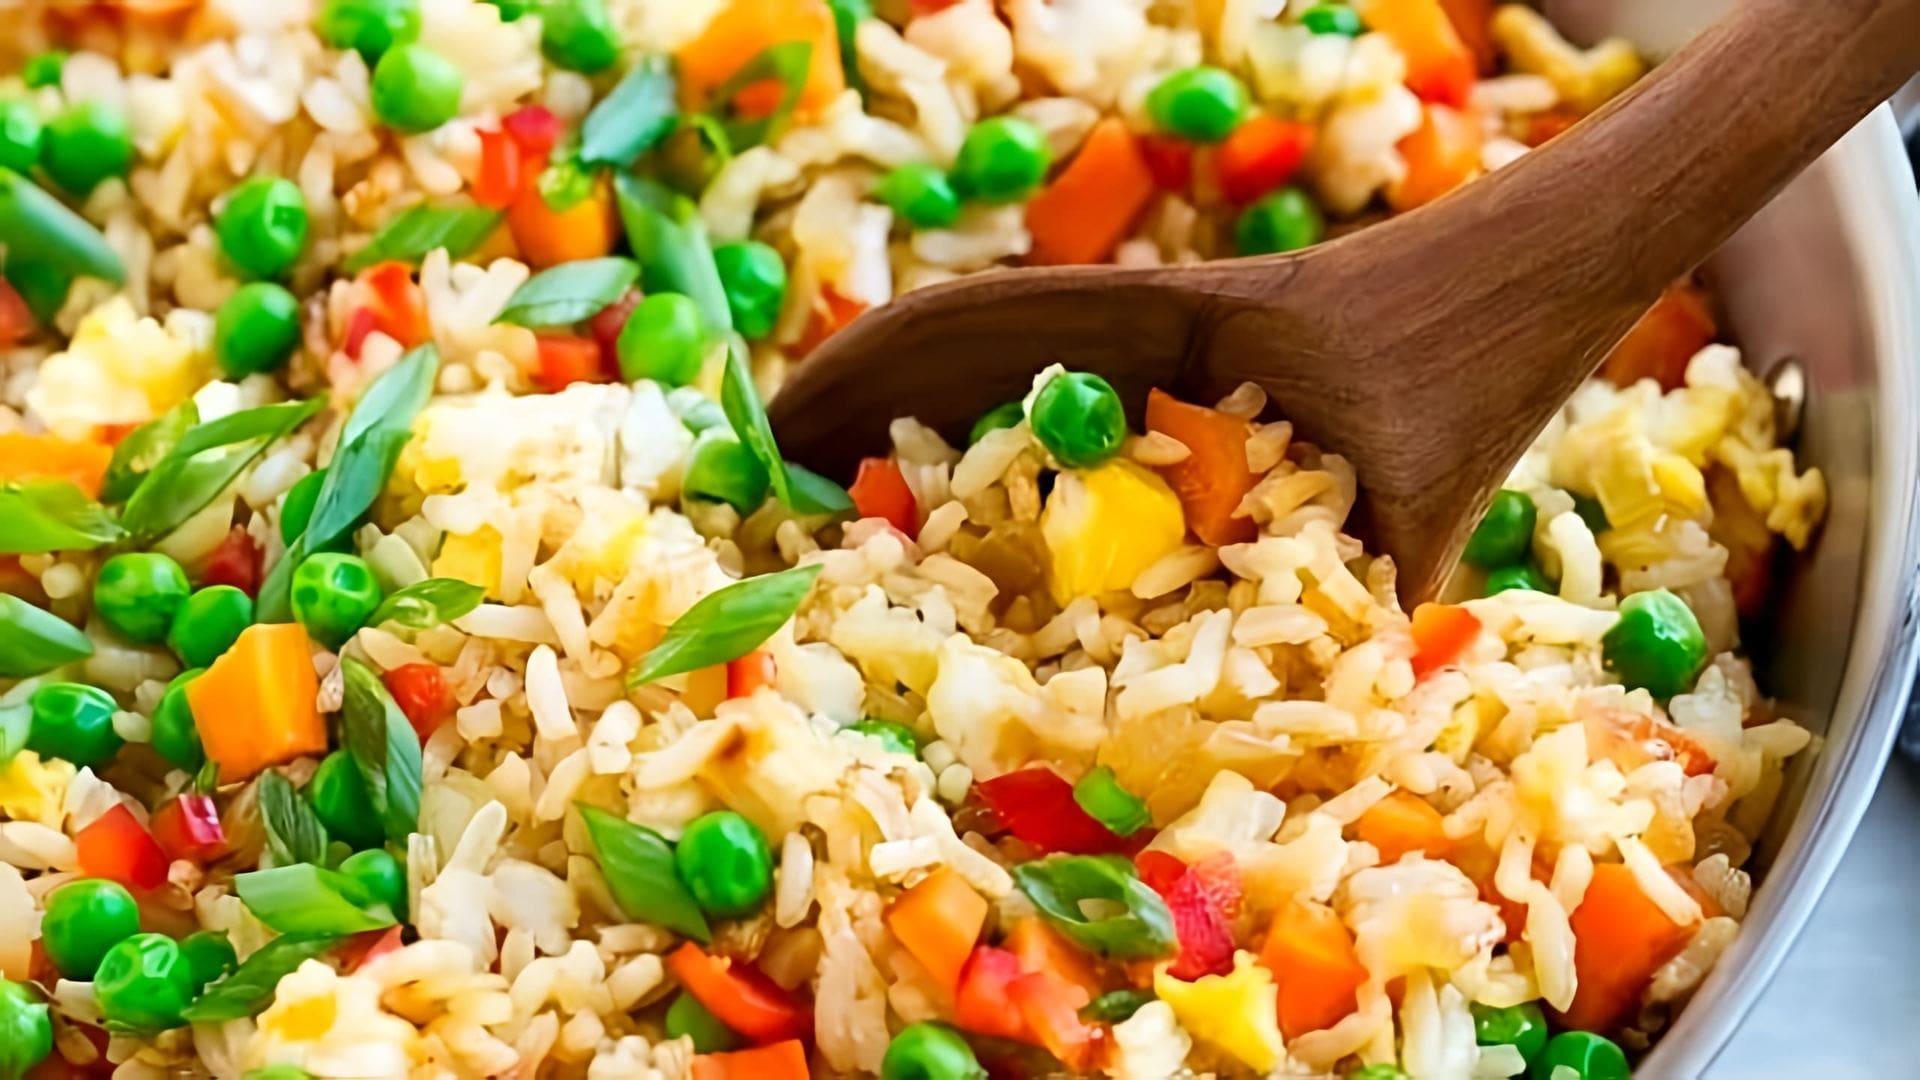 В этом видео демонстрируется простой рецепт приготовления риса с овощами на сковороде